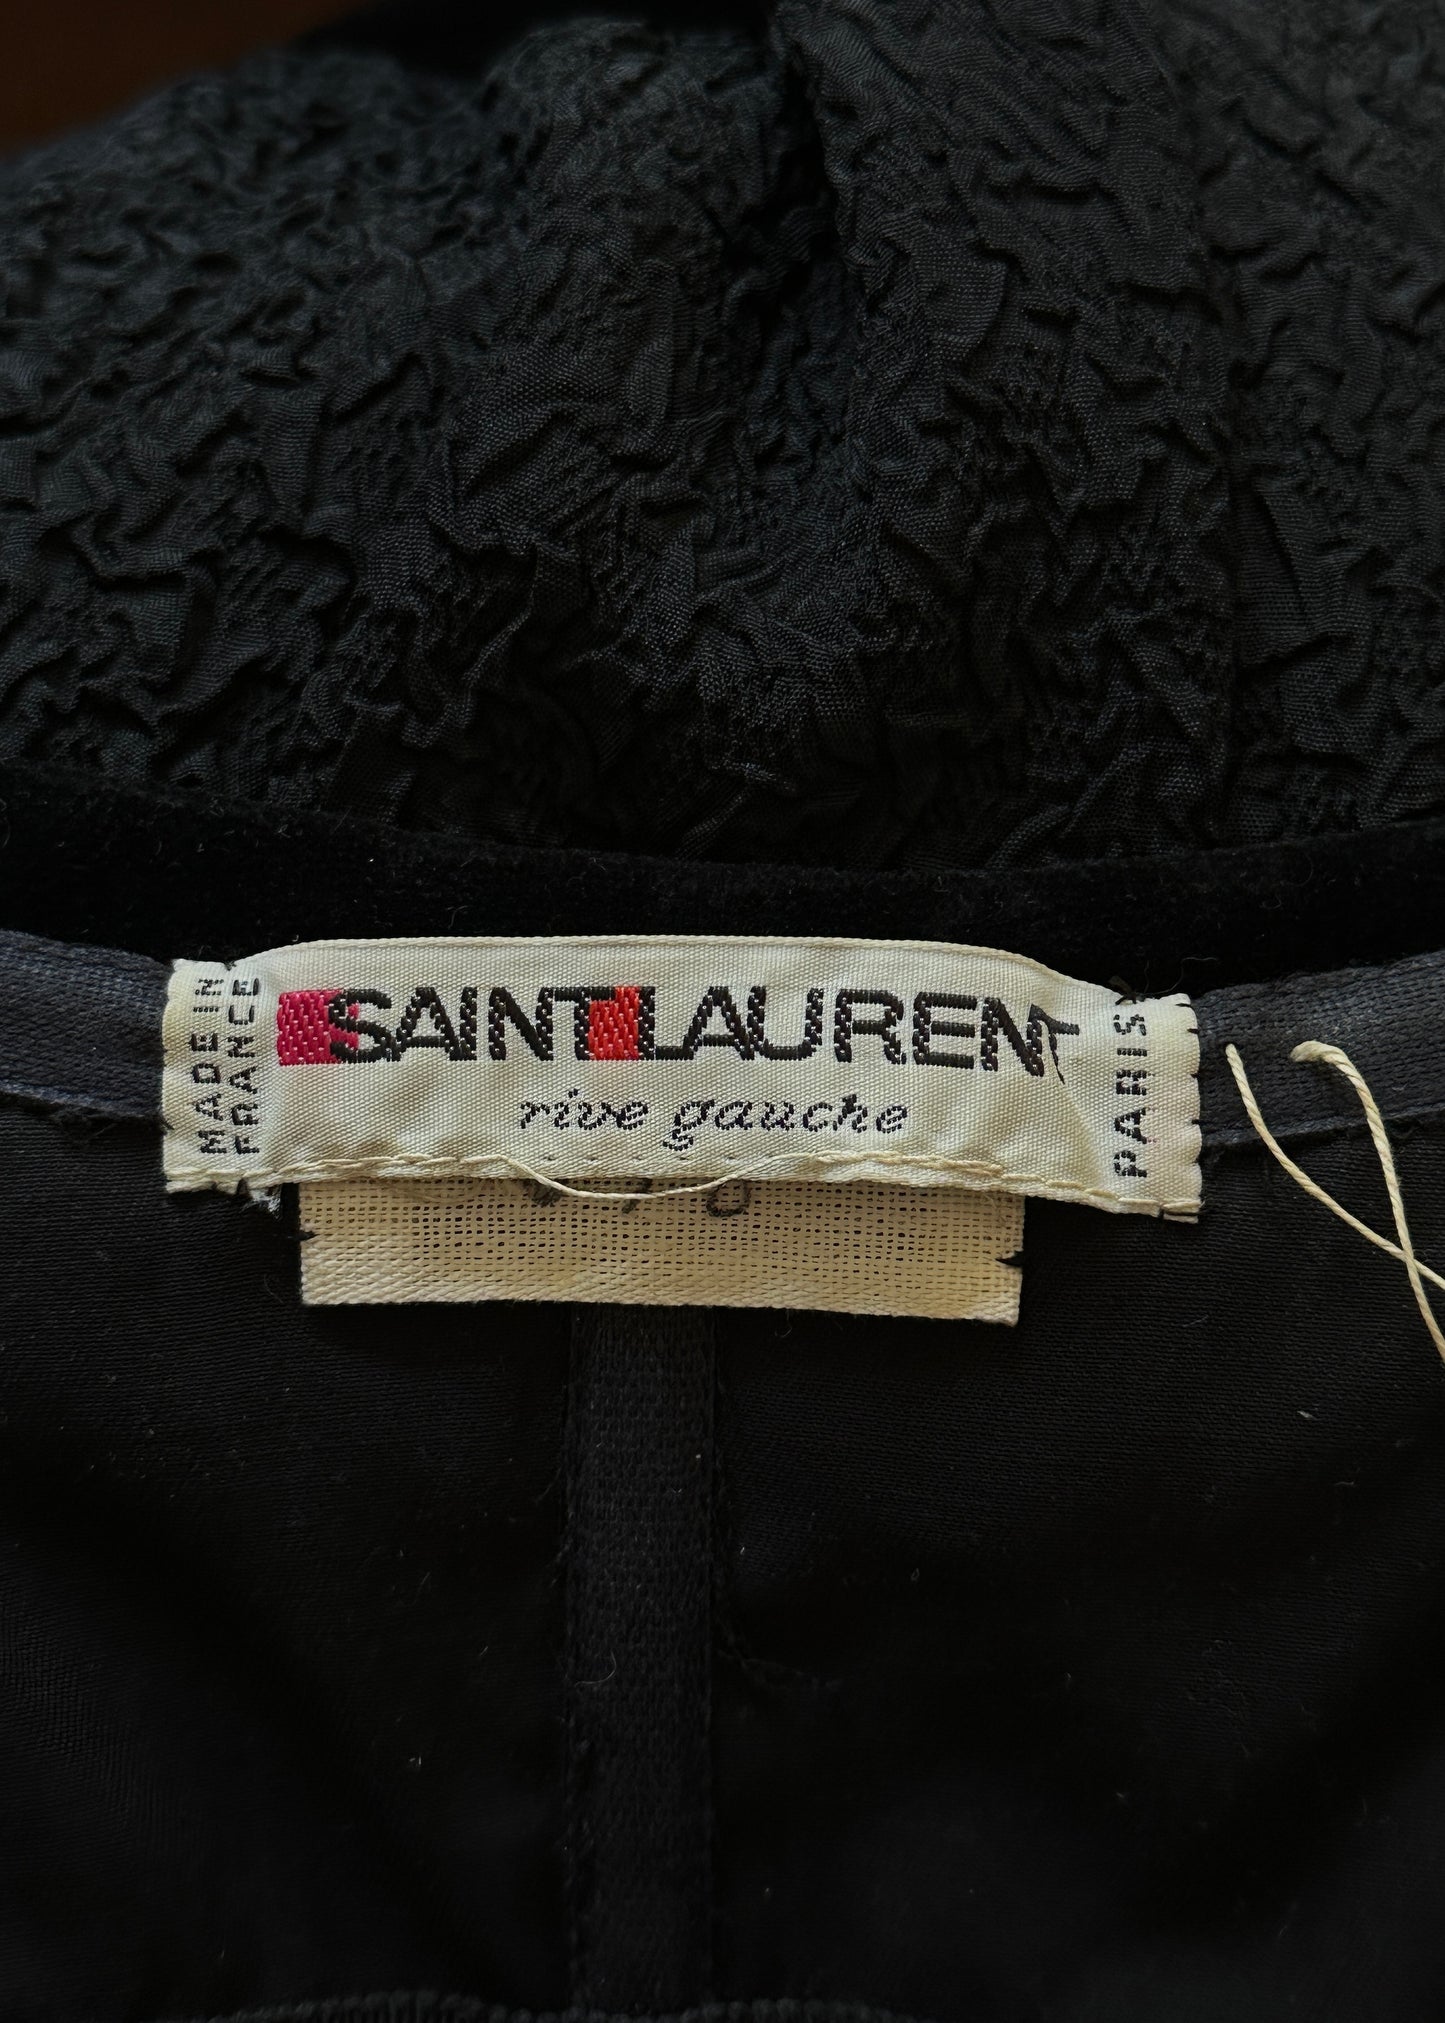 Yves Saint Laurent Spring 1988 Strapless Bow Dress